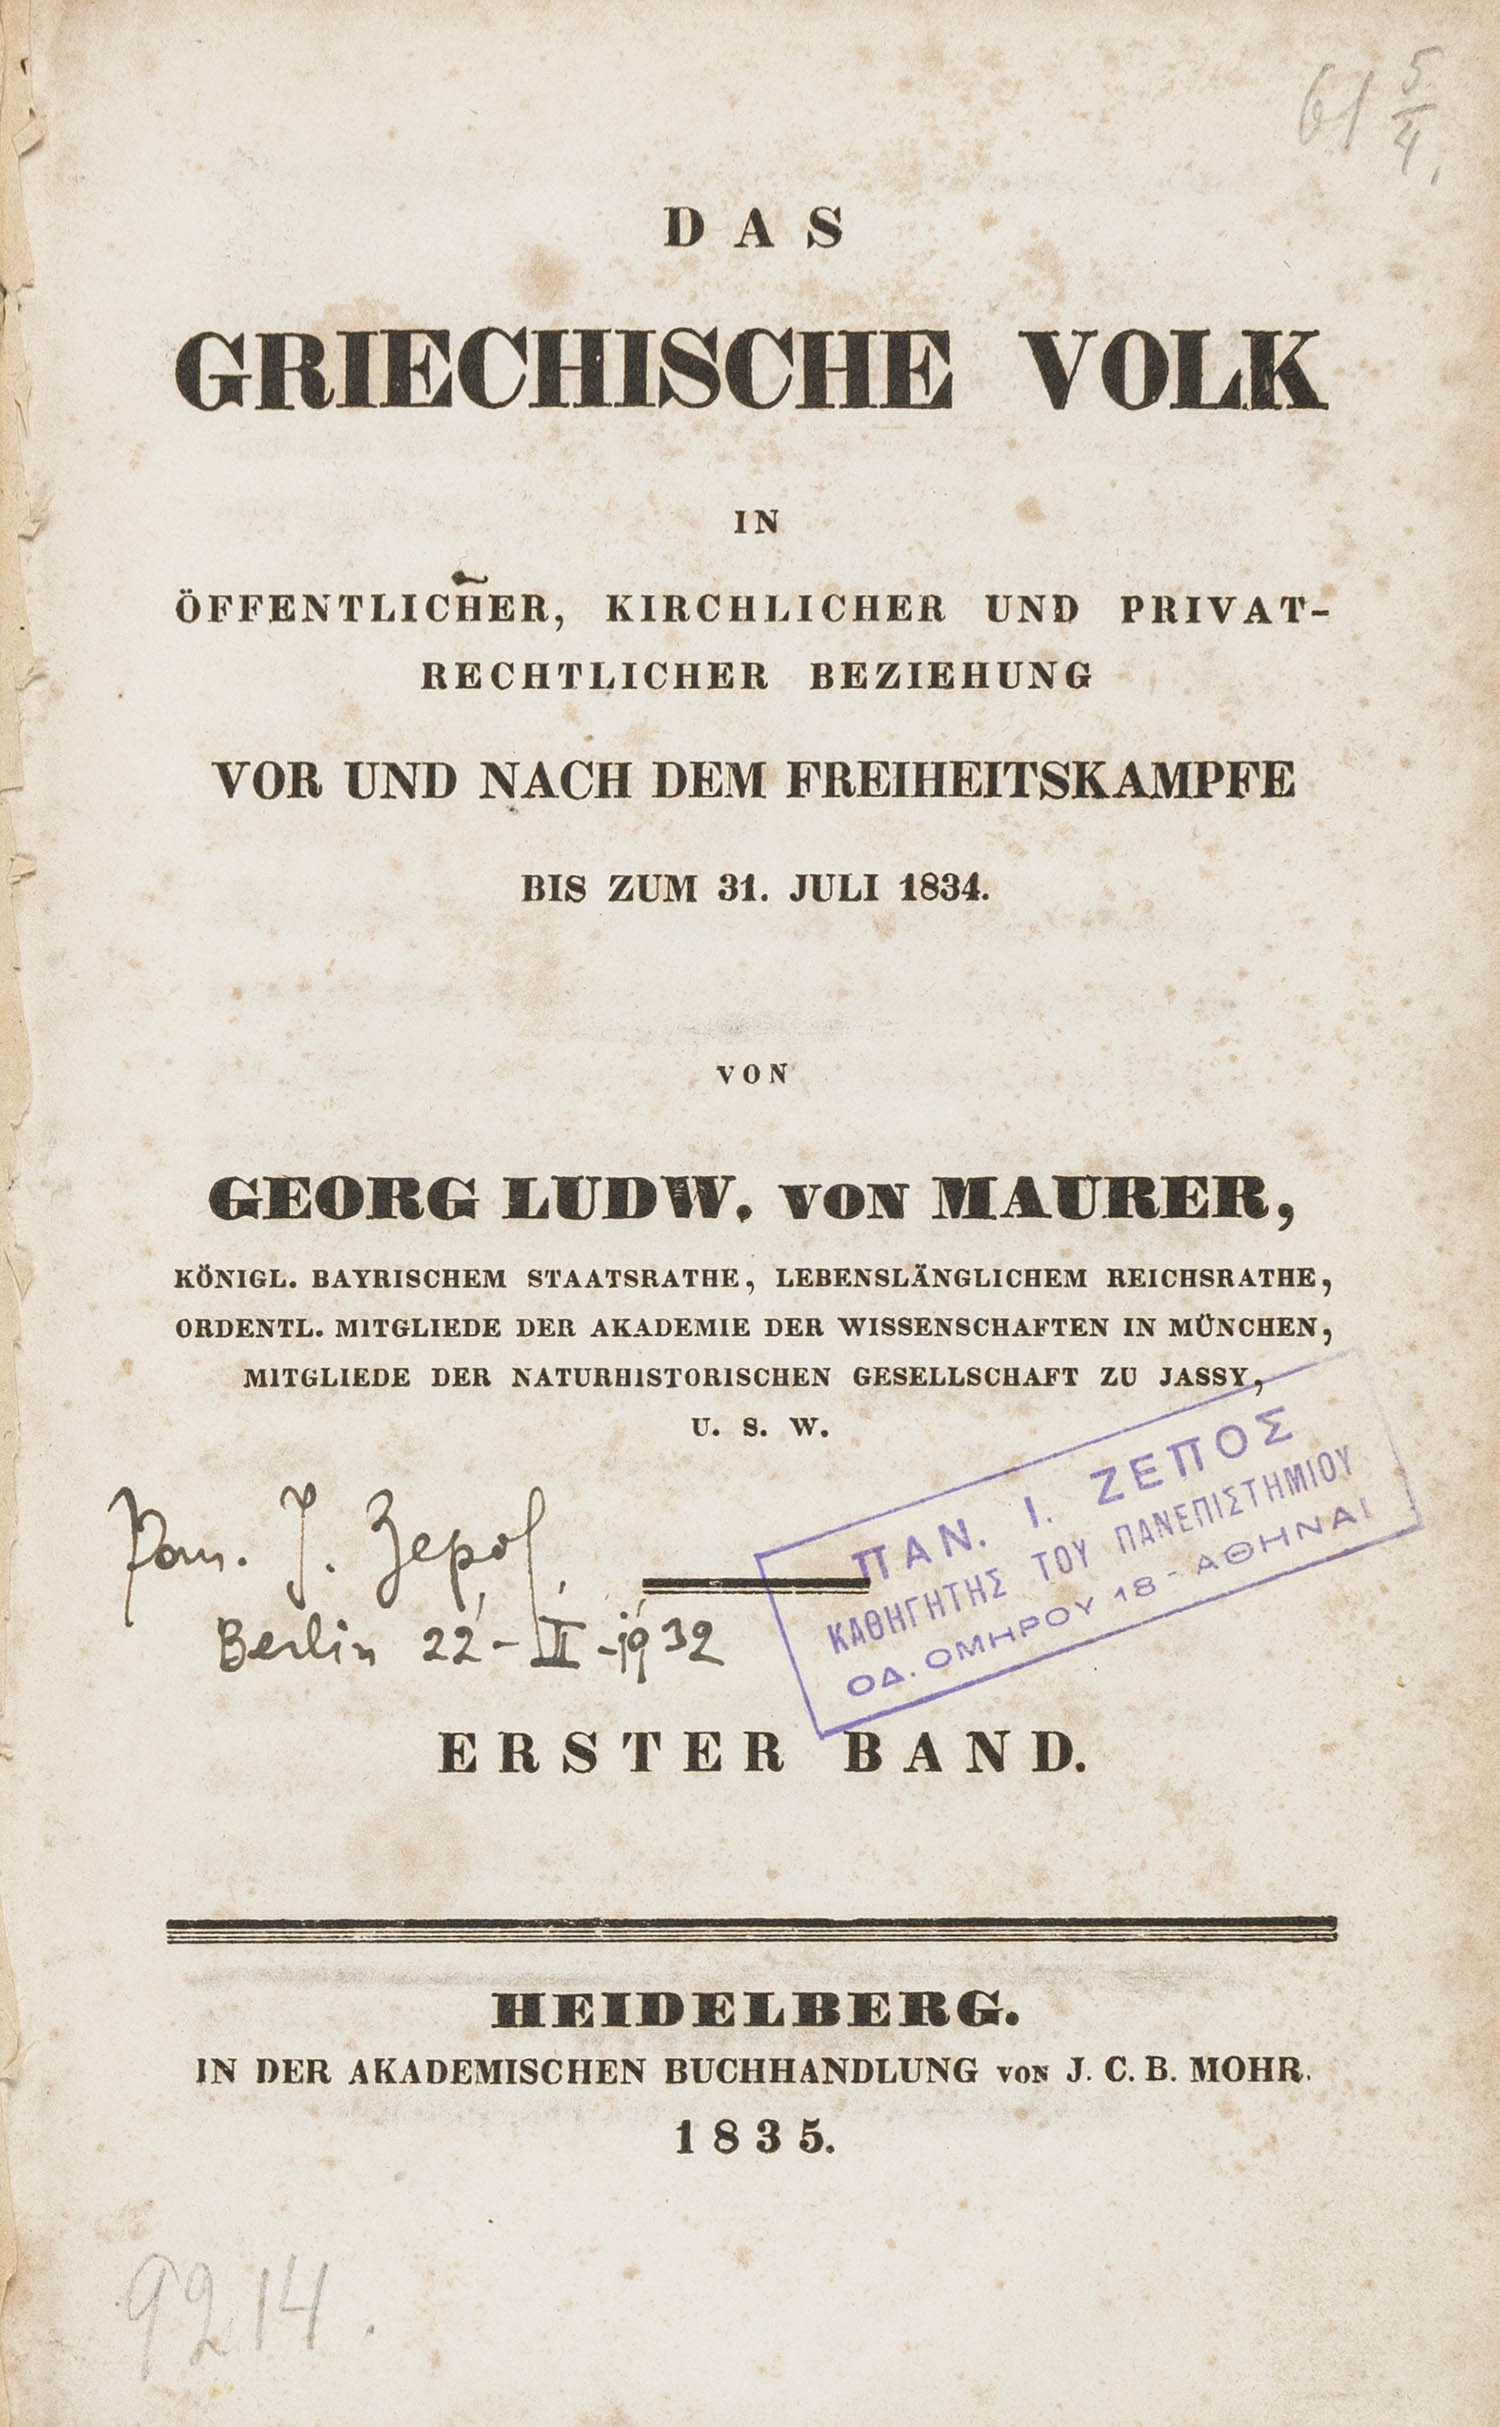 MAURER, Georg Ludwig, von.